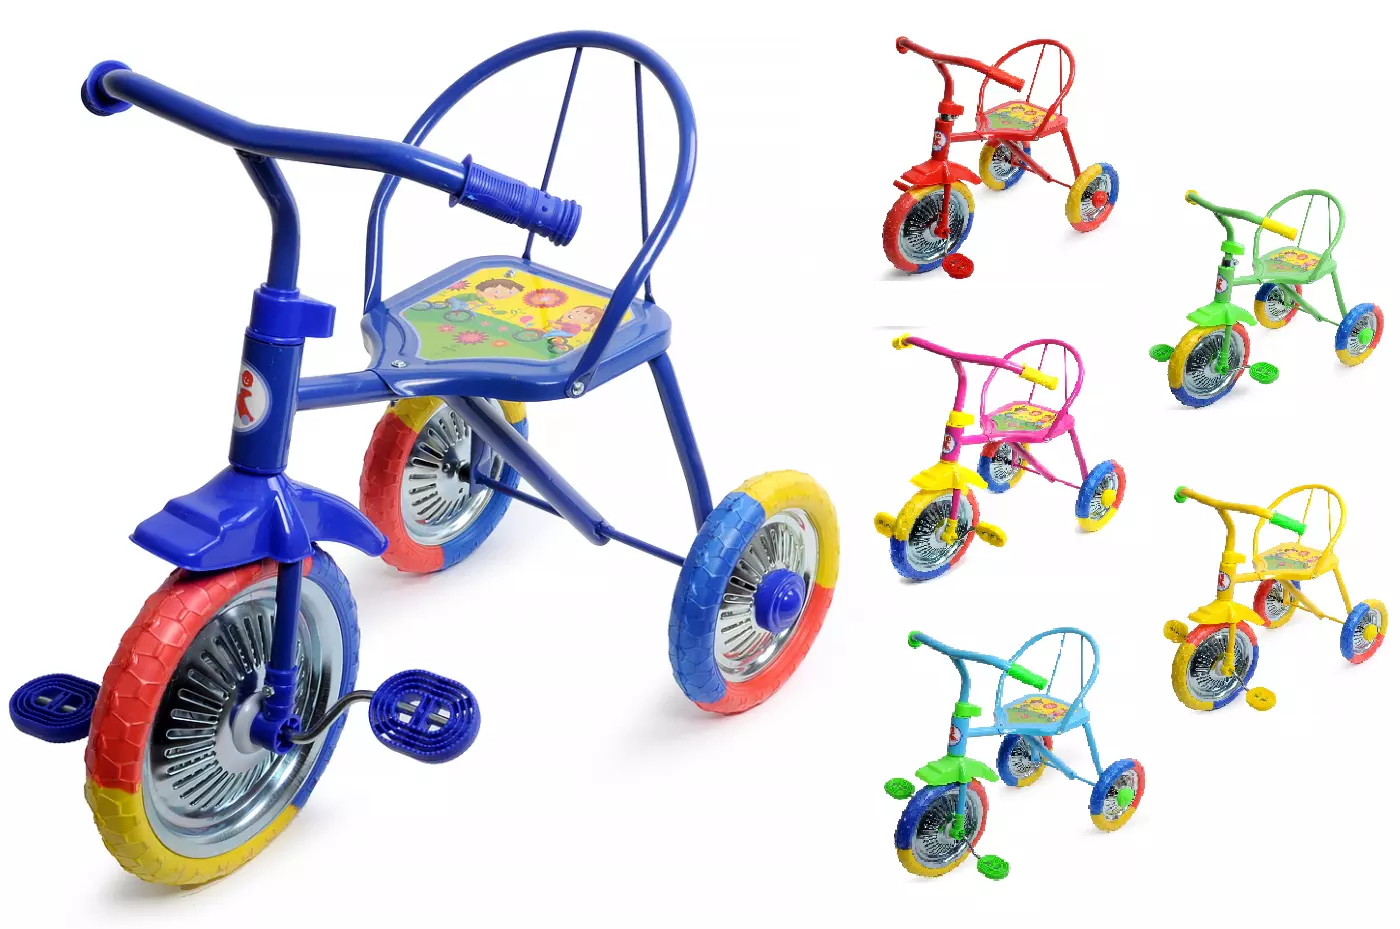 Велосипед для ребенка авито. Велосипед трехколесный lh702. Велосипед 3-х озорной ветерок GV-b3-2mx цвета микс. Трехколесный велосипед PN-1010, Panterra, "гвоздик". Велосипед трёхколёсный детский lh702.